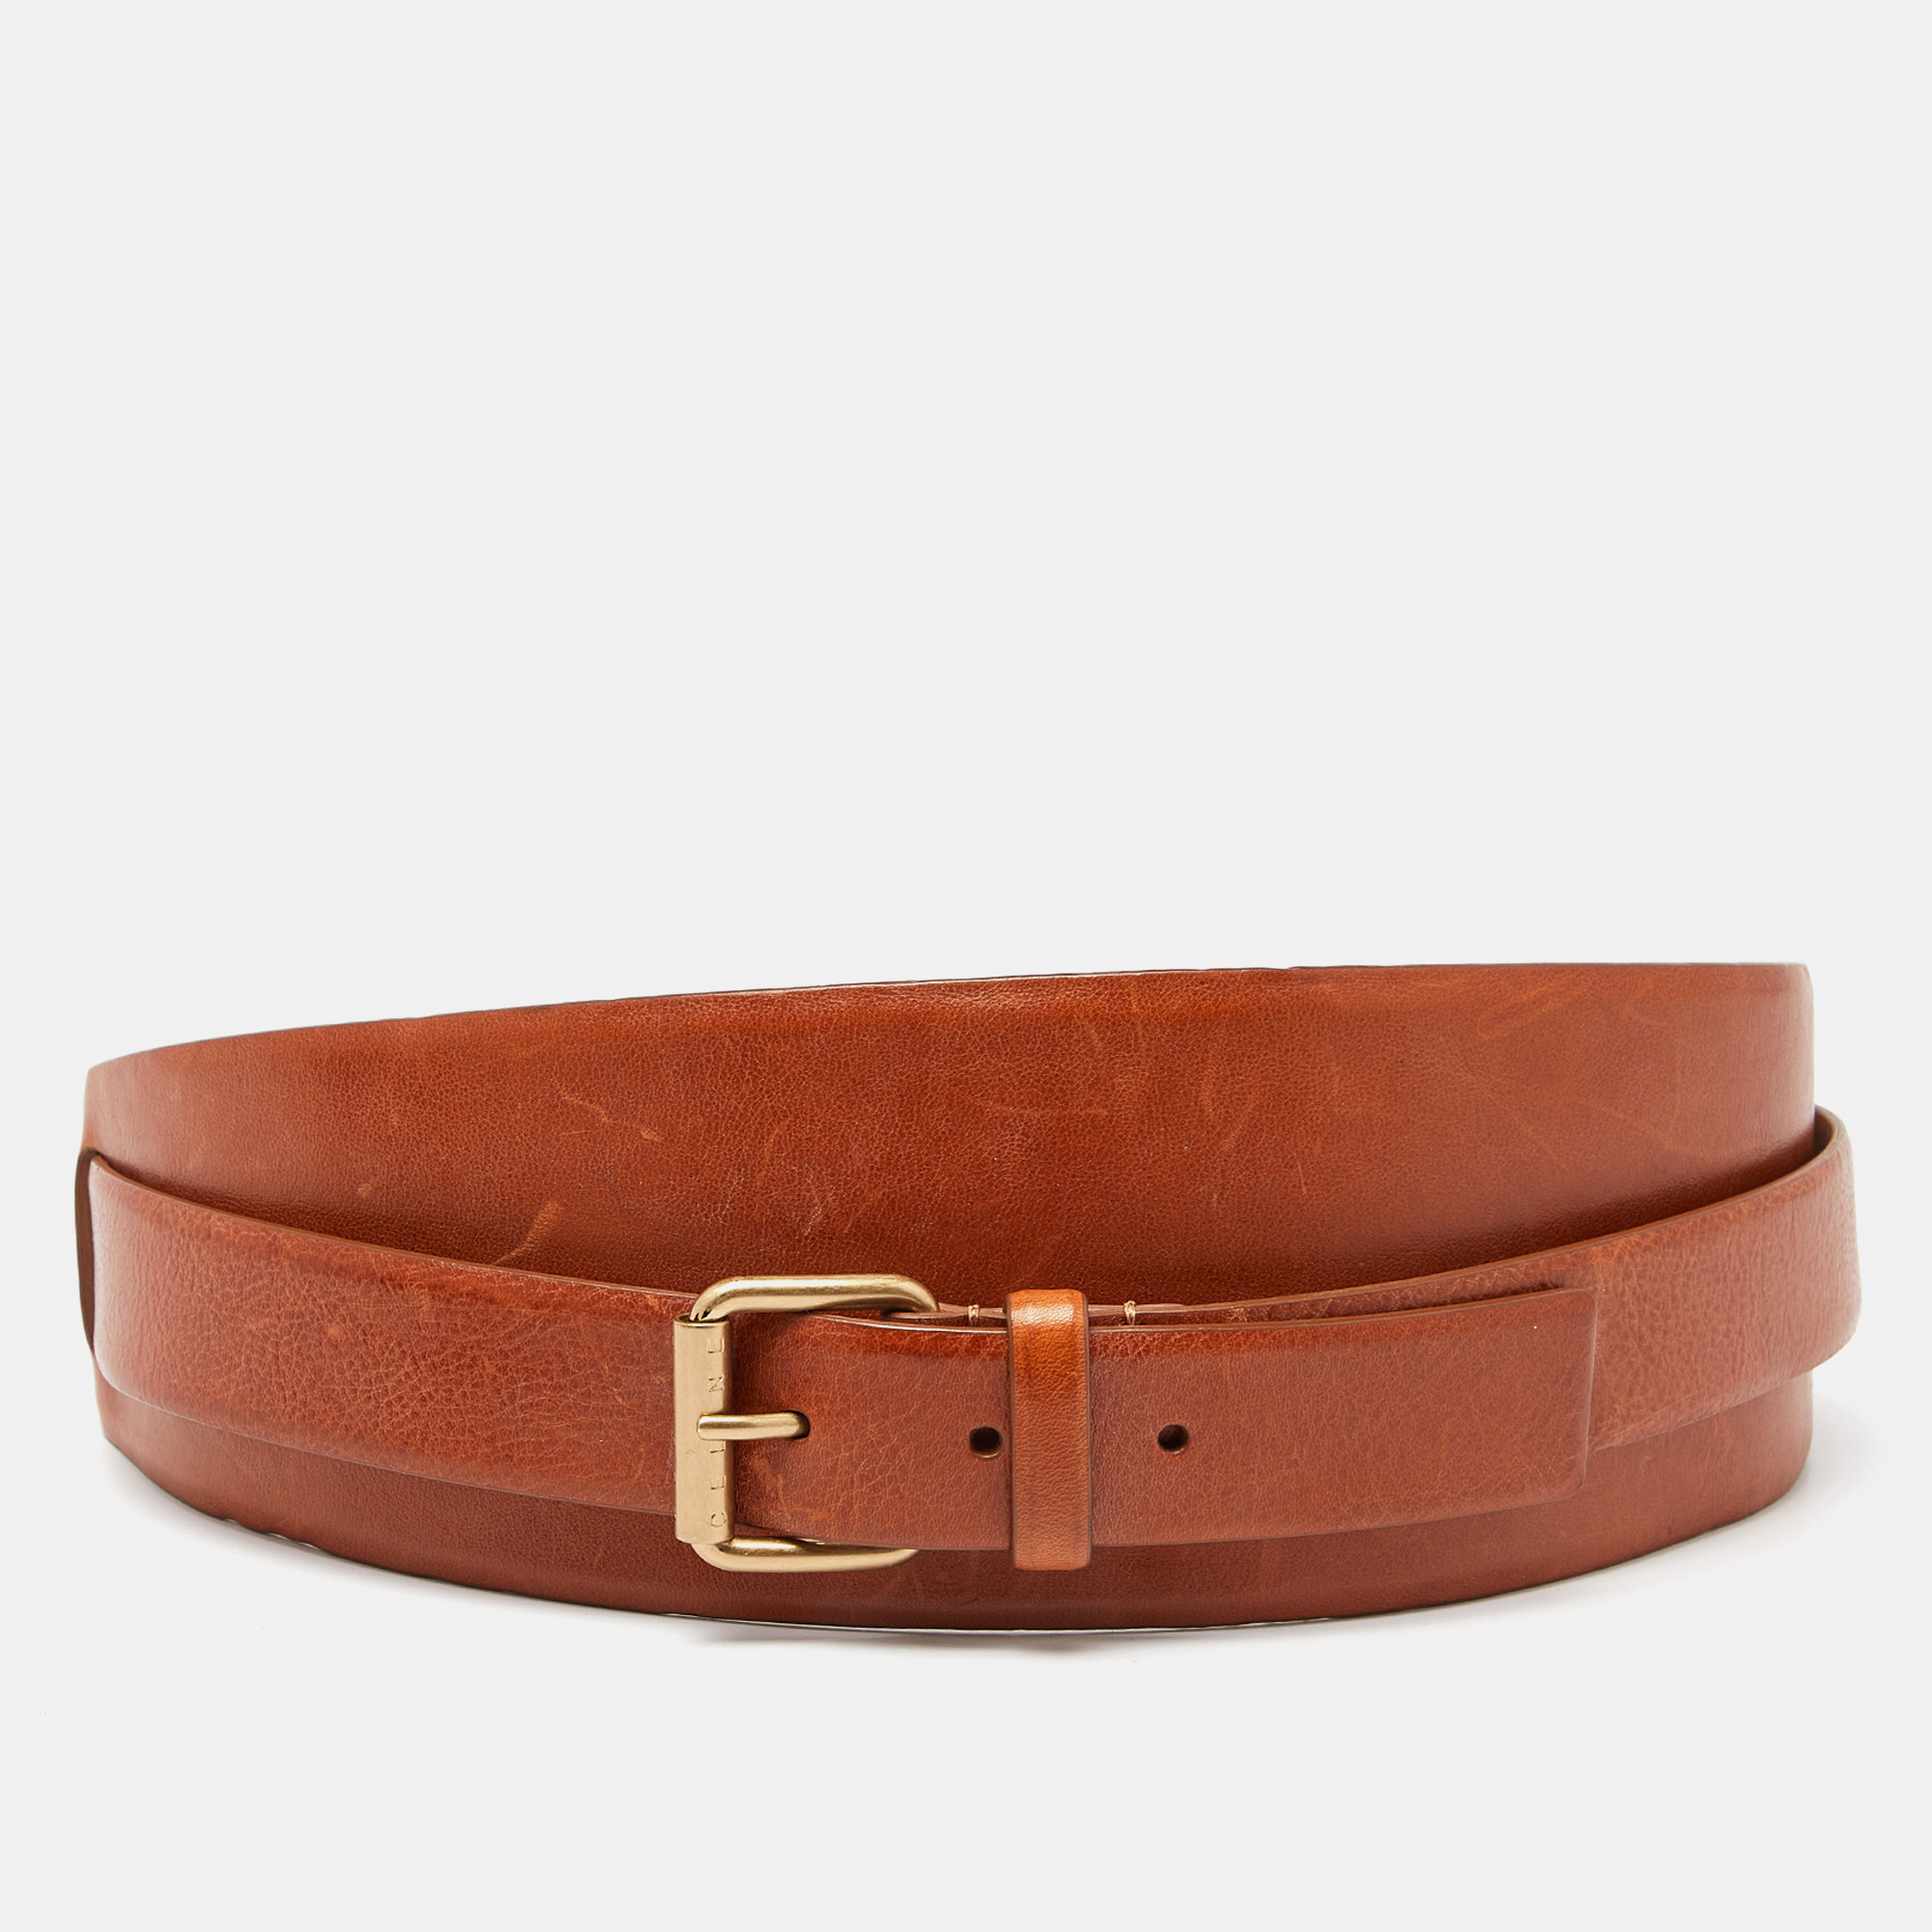 Celine tan leather wide waist belt m